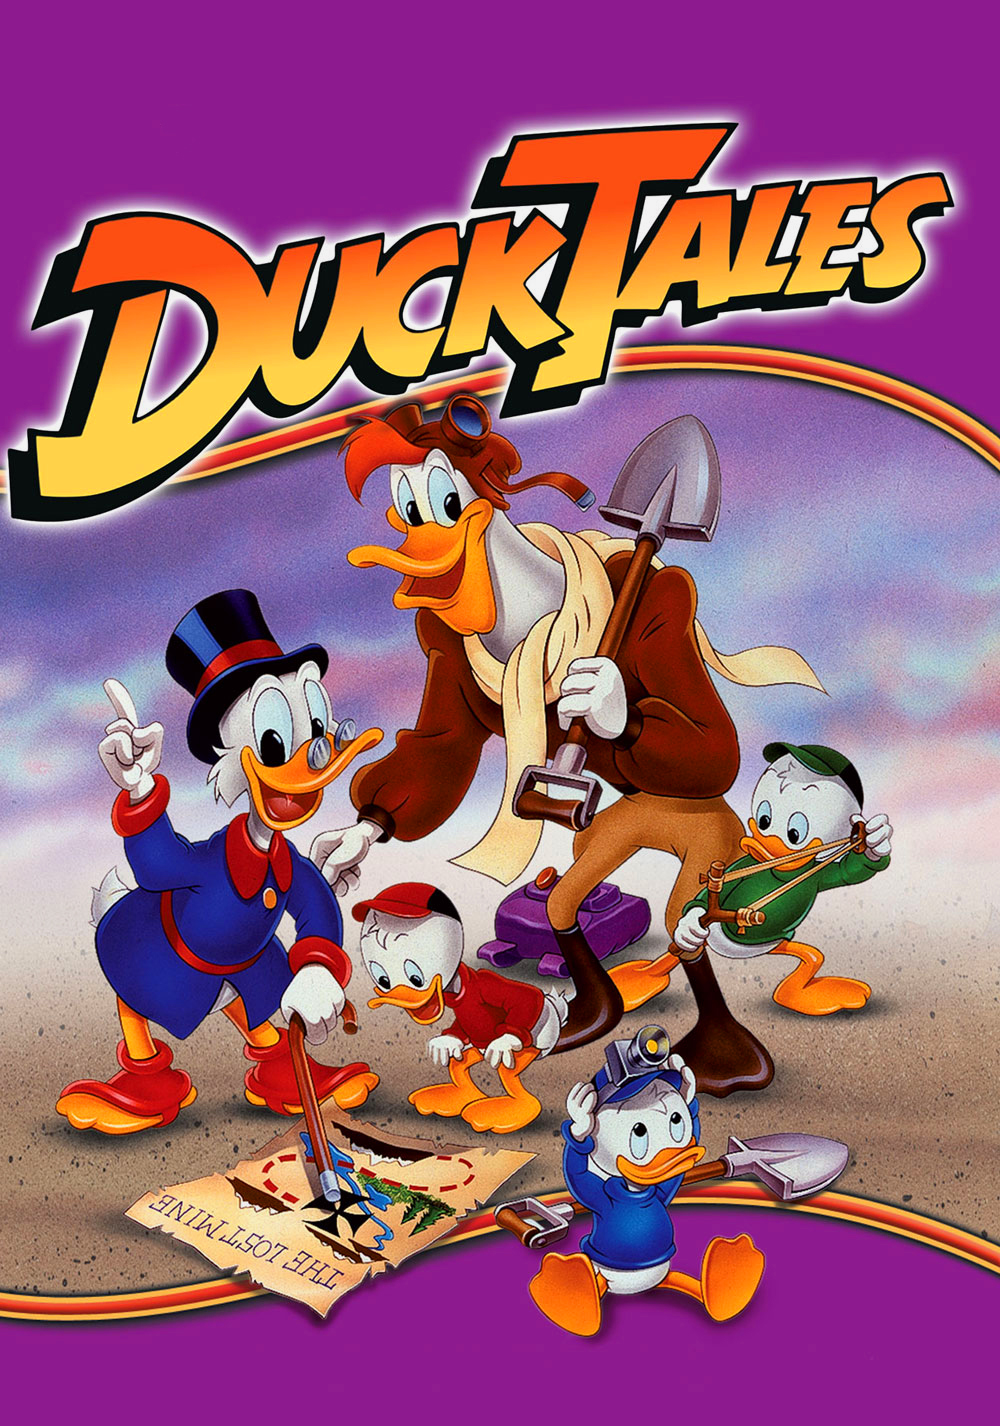 Ducktales 2017 Vs 1987 - 1000x1426 Wallpaper 